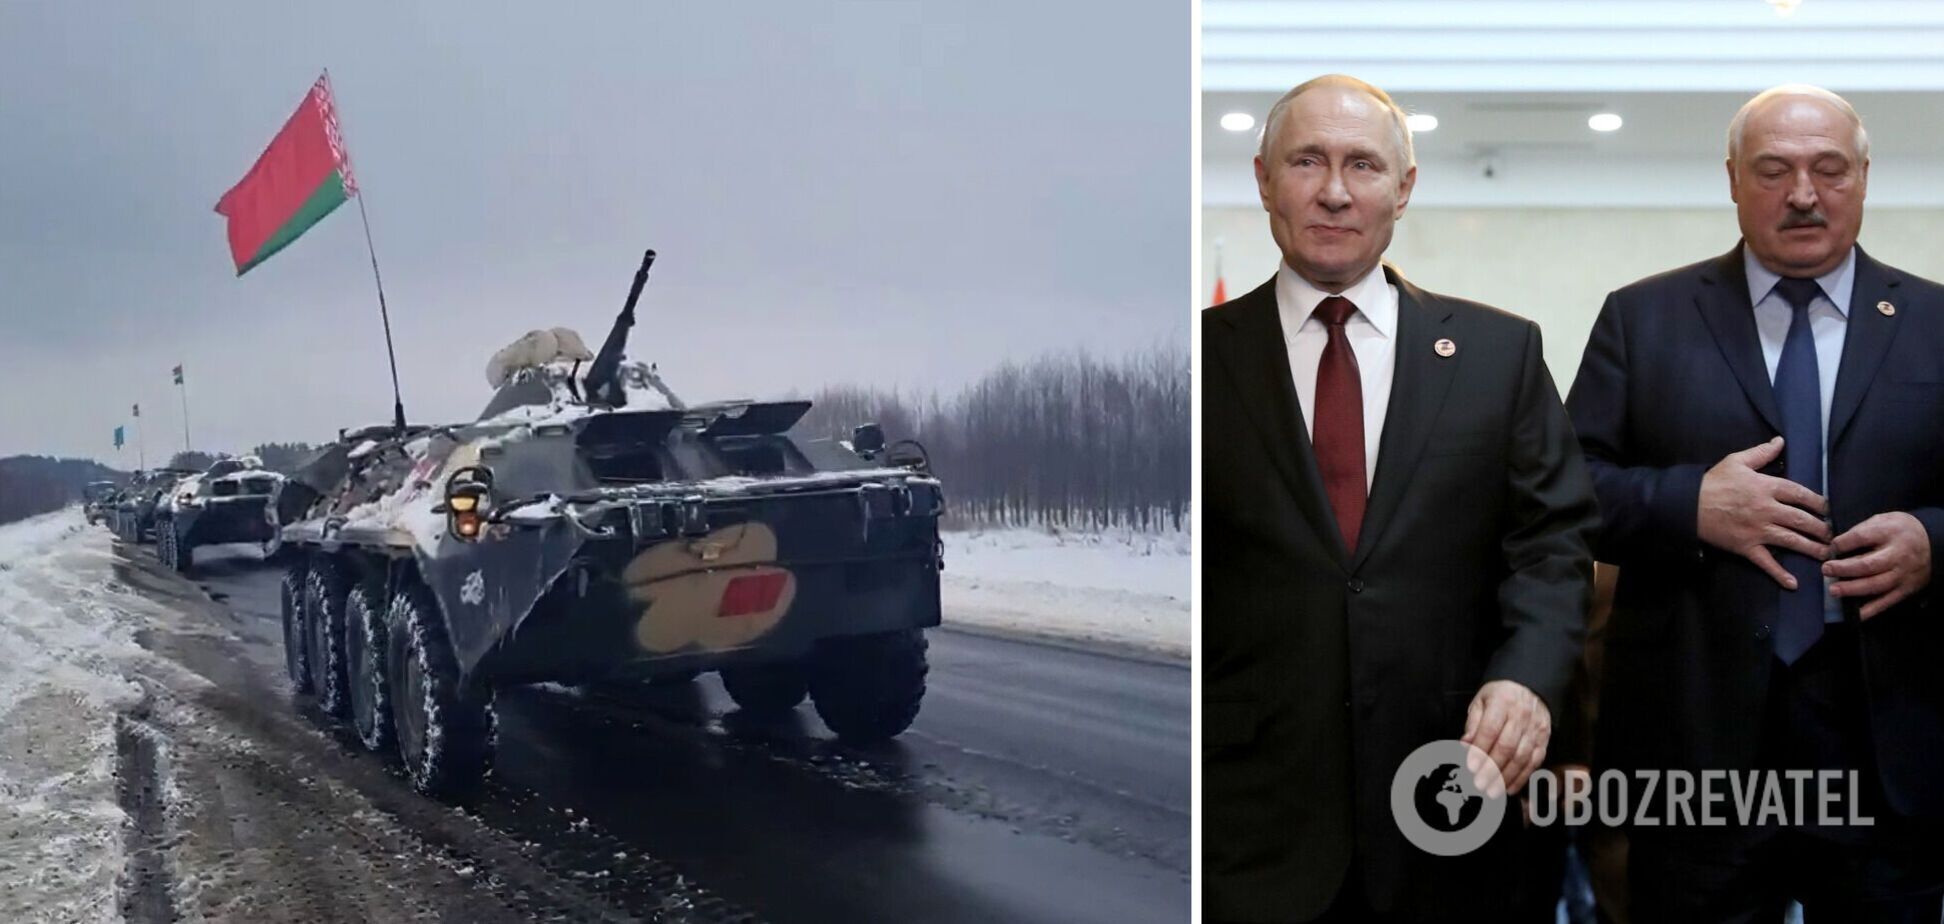 Кремль намагається приховати справжні наміри Путіна щодо Білорусі, а Лукашенко "маневрує" – ISW про переговори в Мінську